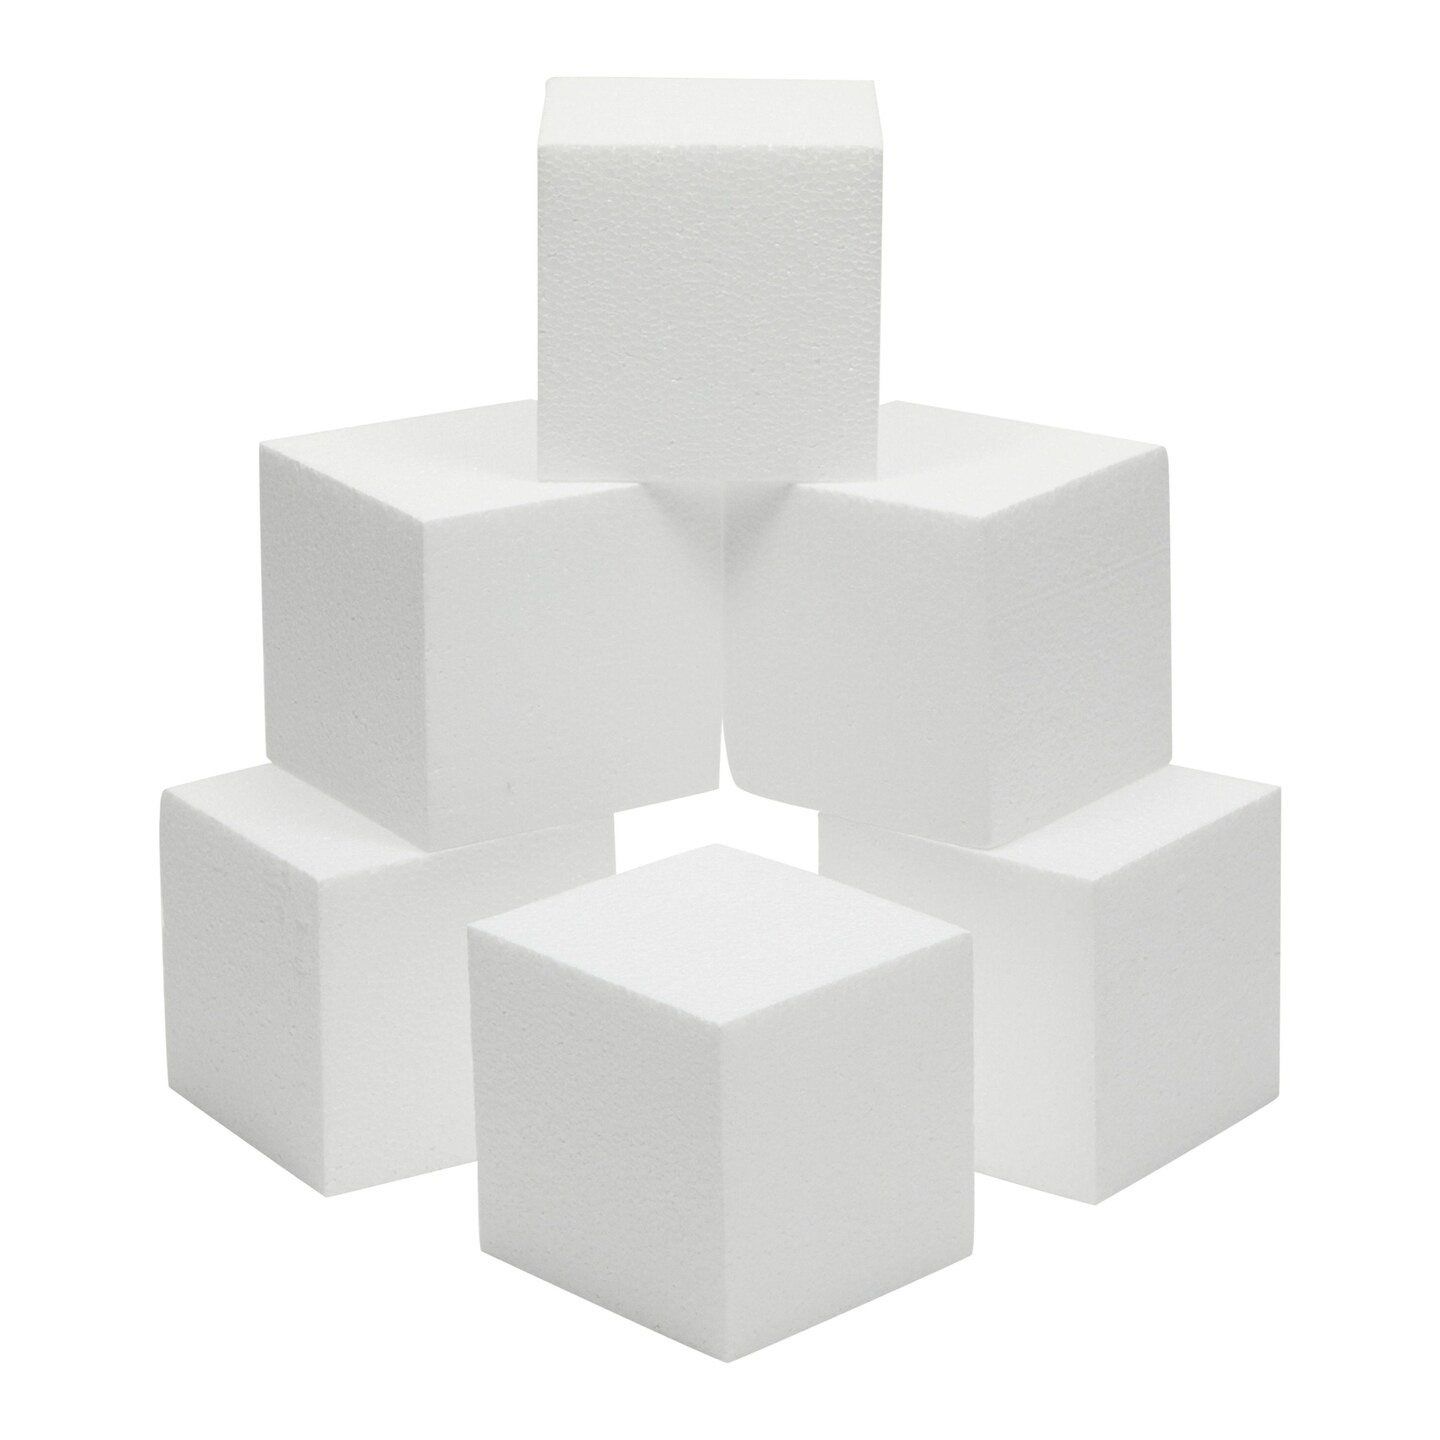 6 Pack Rectangle Foam Blocks for Crafts, Floral Arrangements, DIY